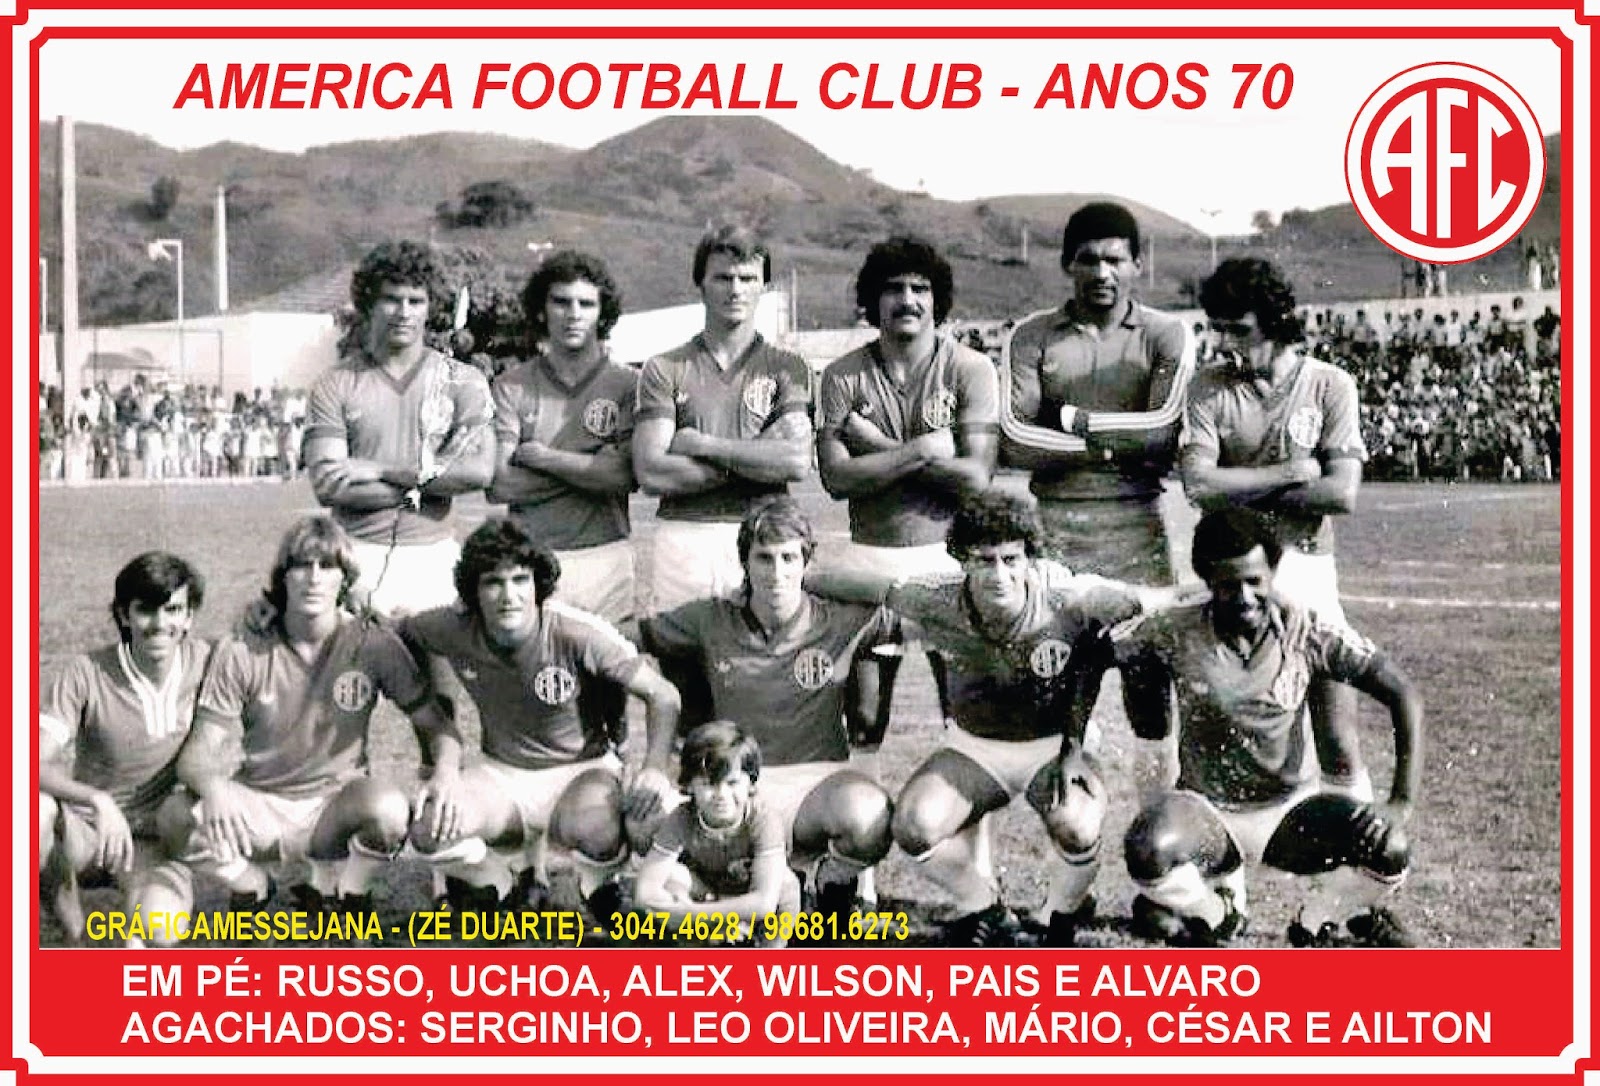 America Football Club - Rio de Janeiro